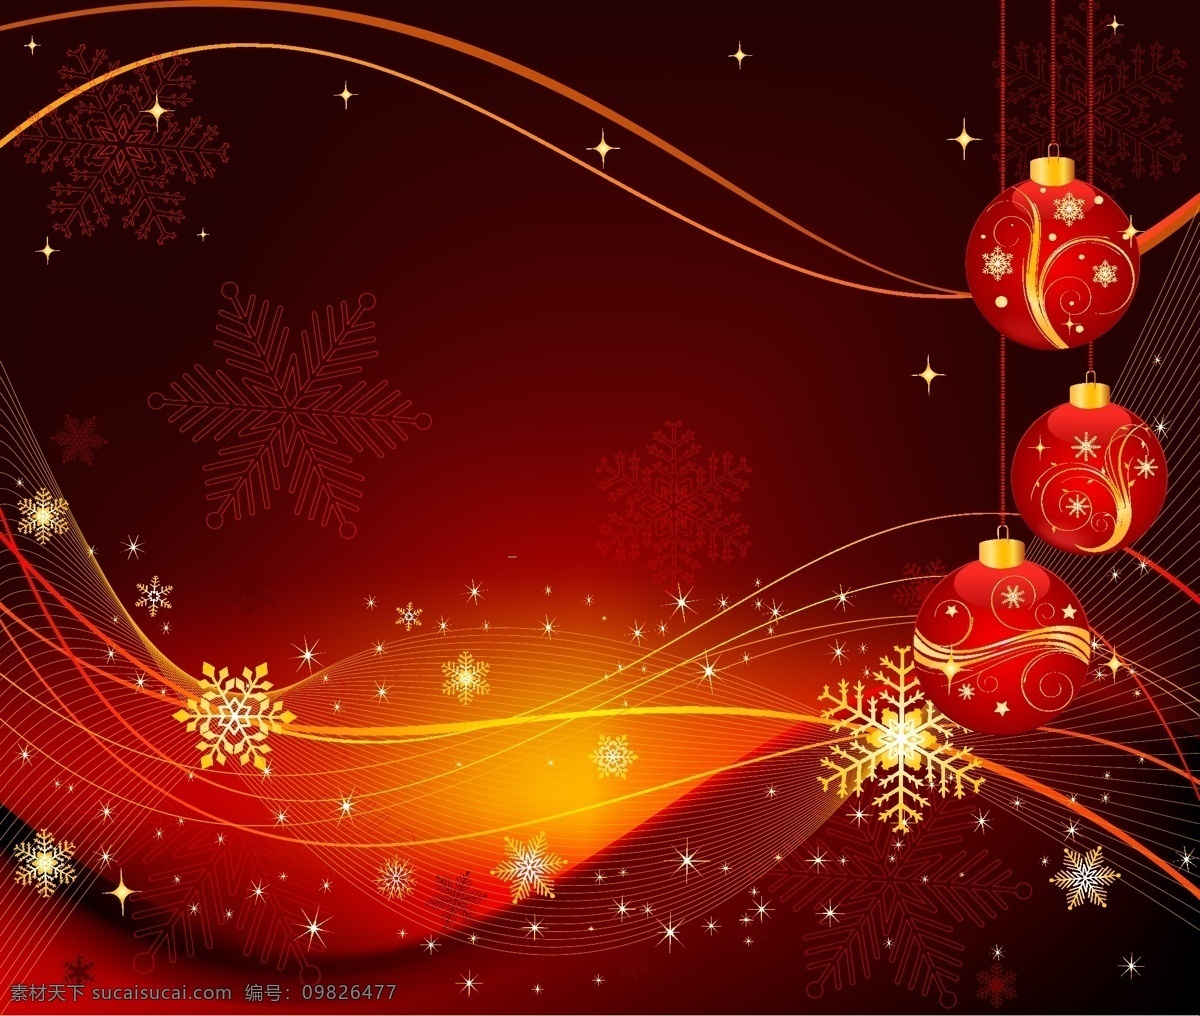 背景 彩球 插画 吊球 格式 花纹 精美 流线 圣诞节 圣诞树 矢量 二 关键字 雪花 星星 矢量素材 矢量图 其他矢量图